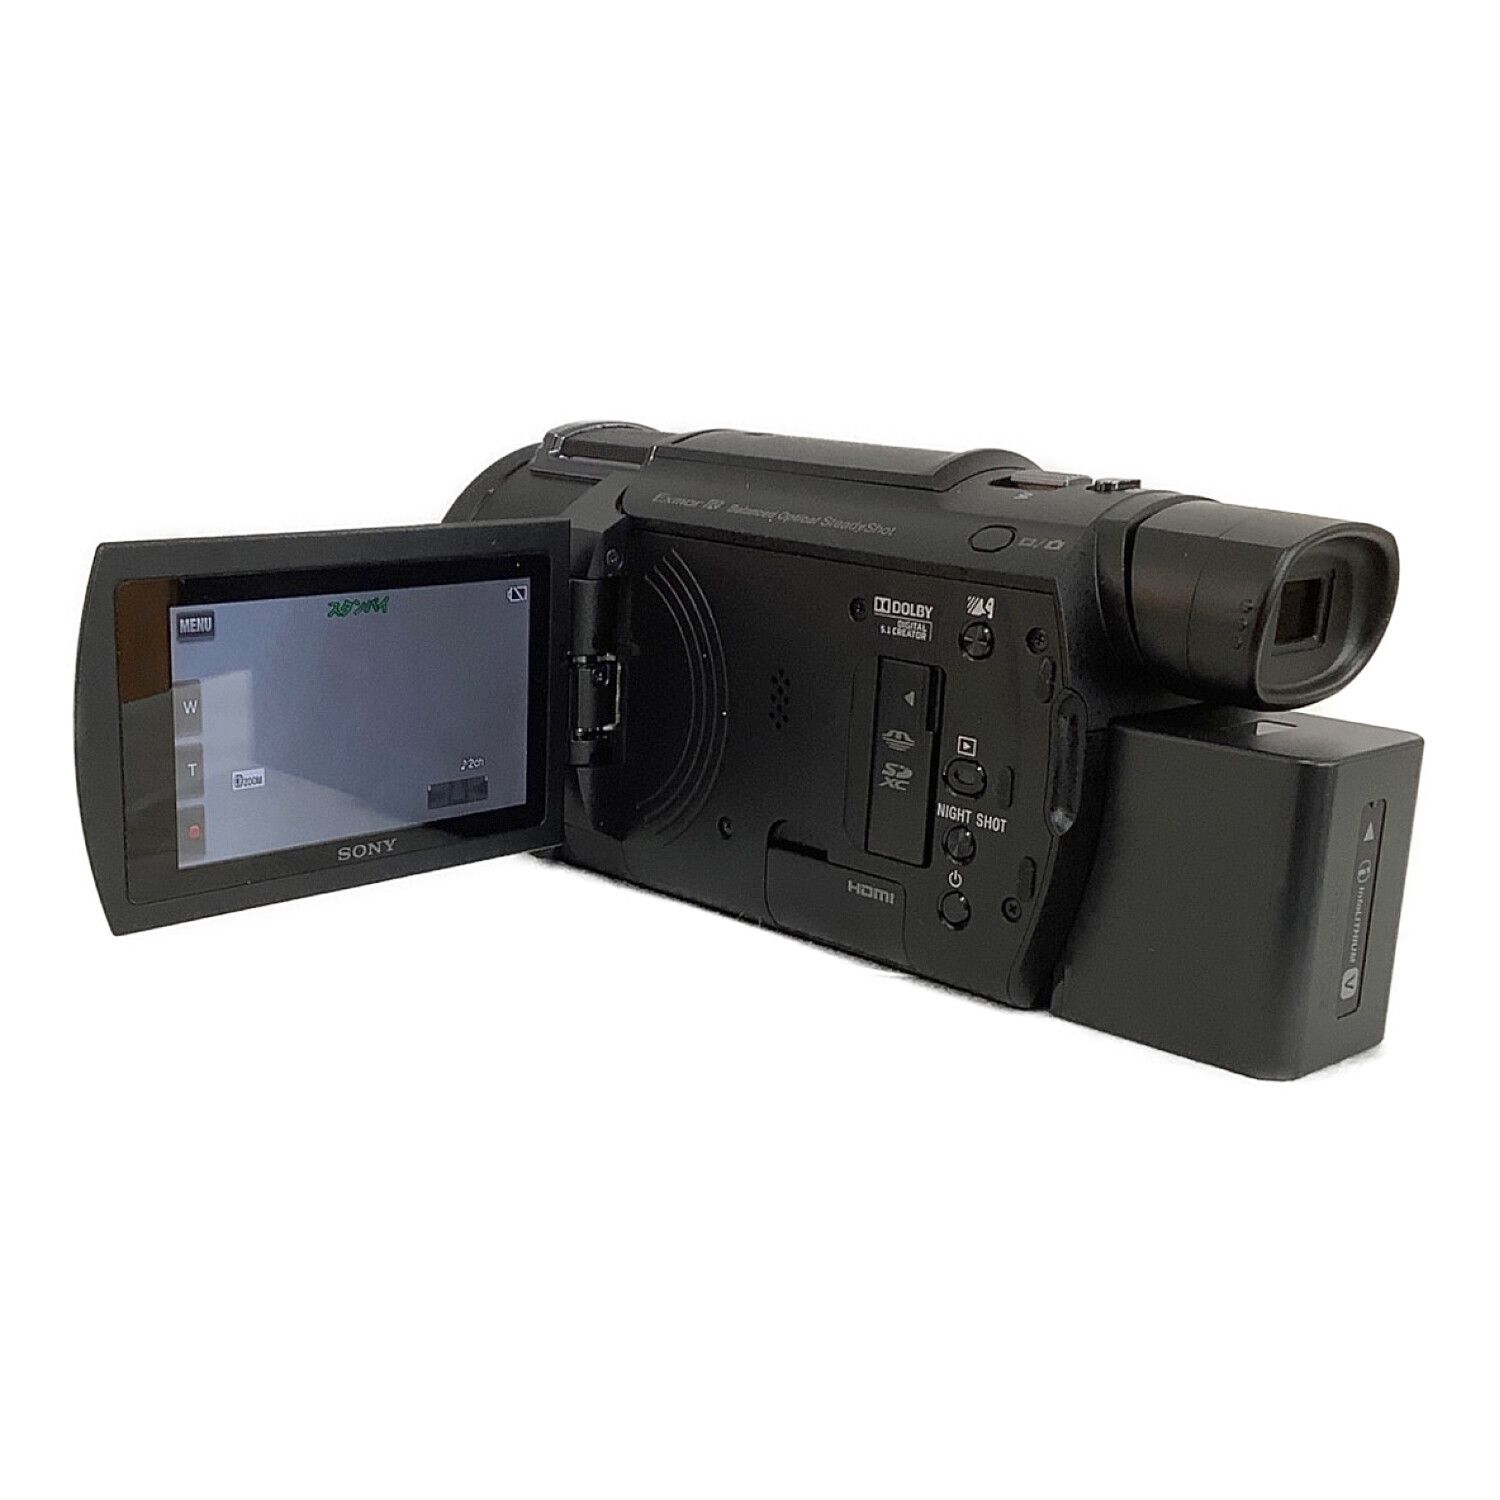 SONY (ソニー) デジタル4Kビデオカメラ 撮影時間150 分 829万画素 SD